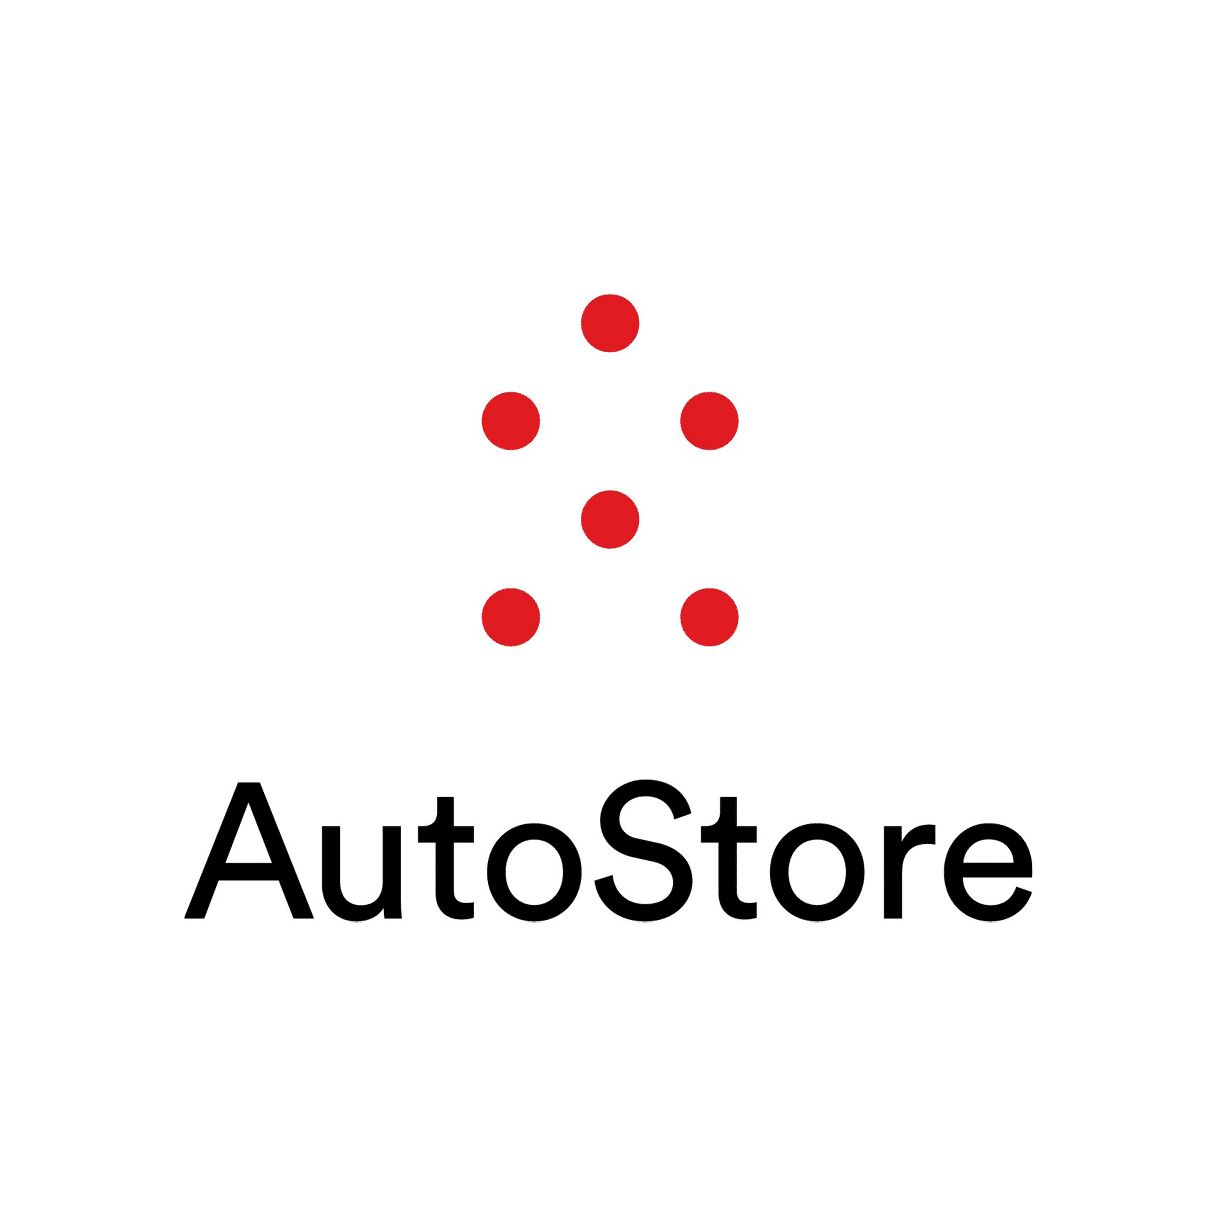 AutoStore